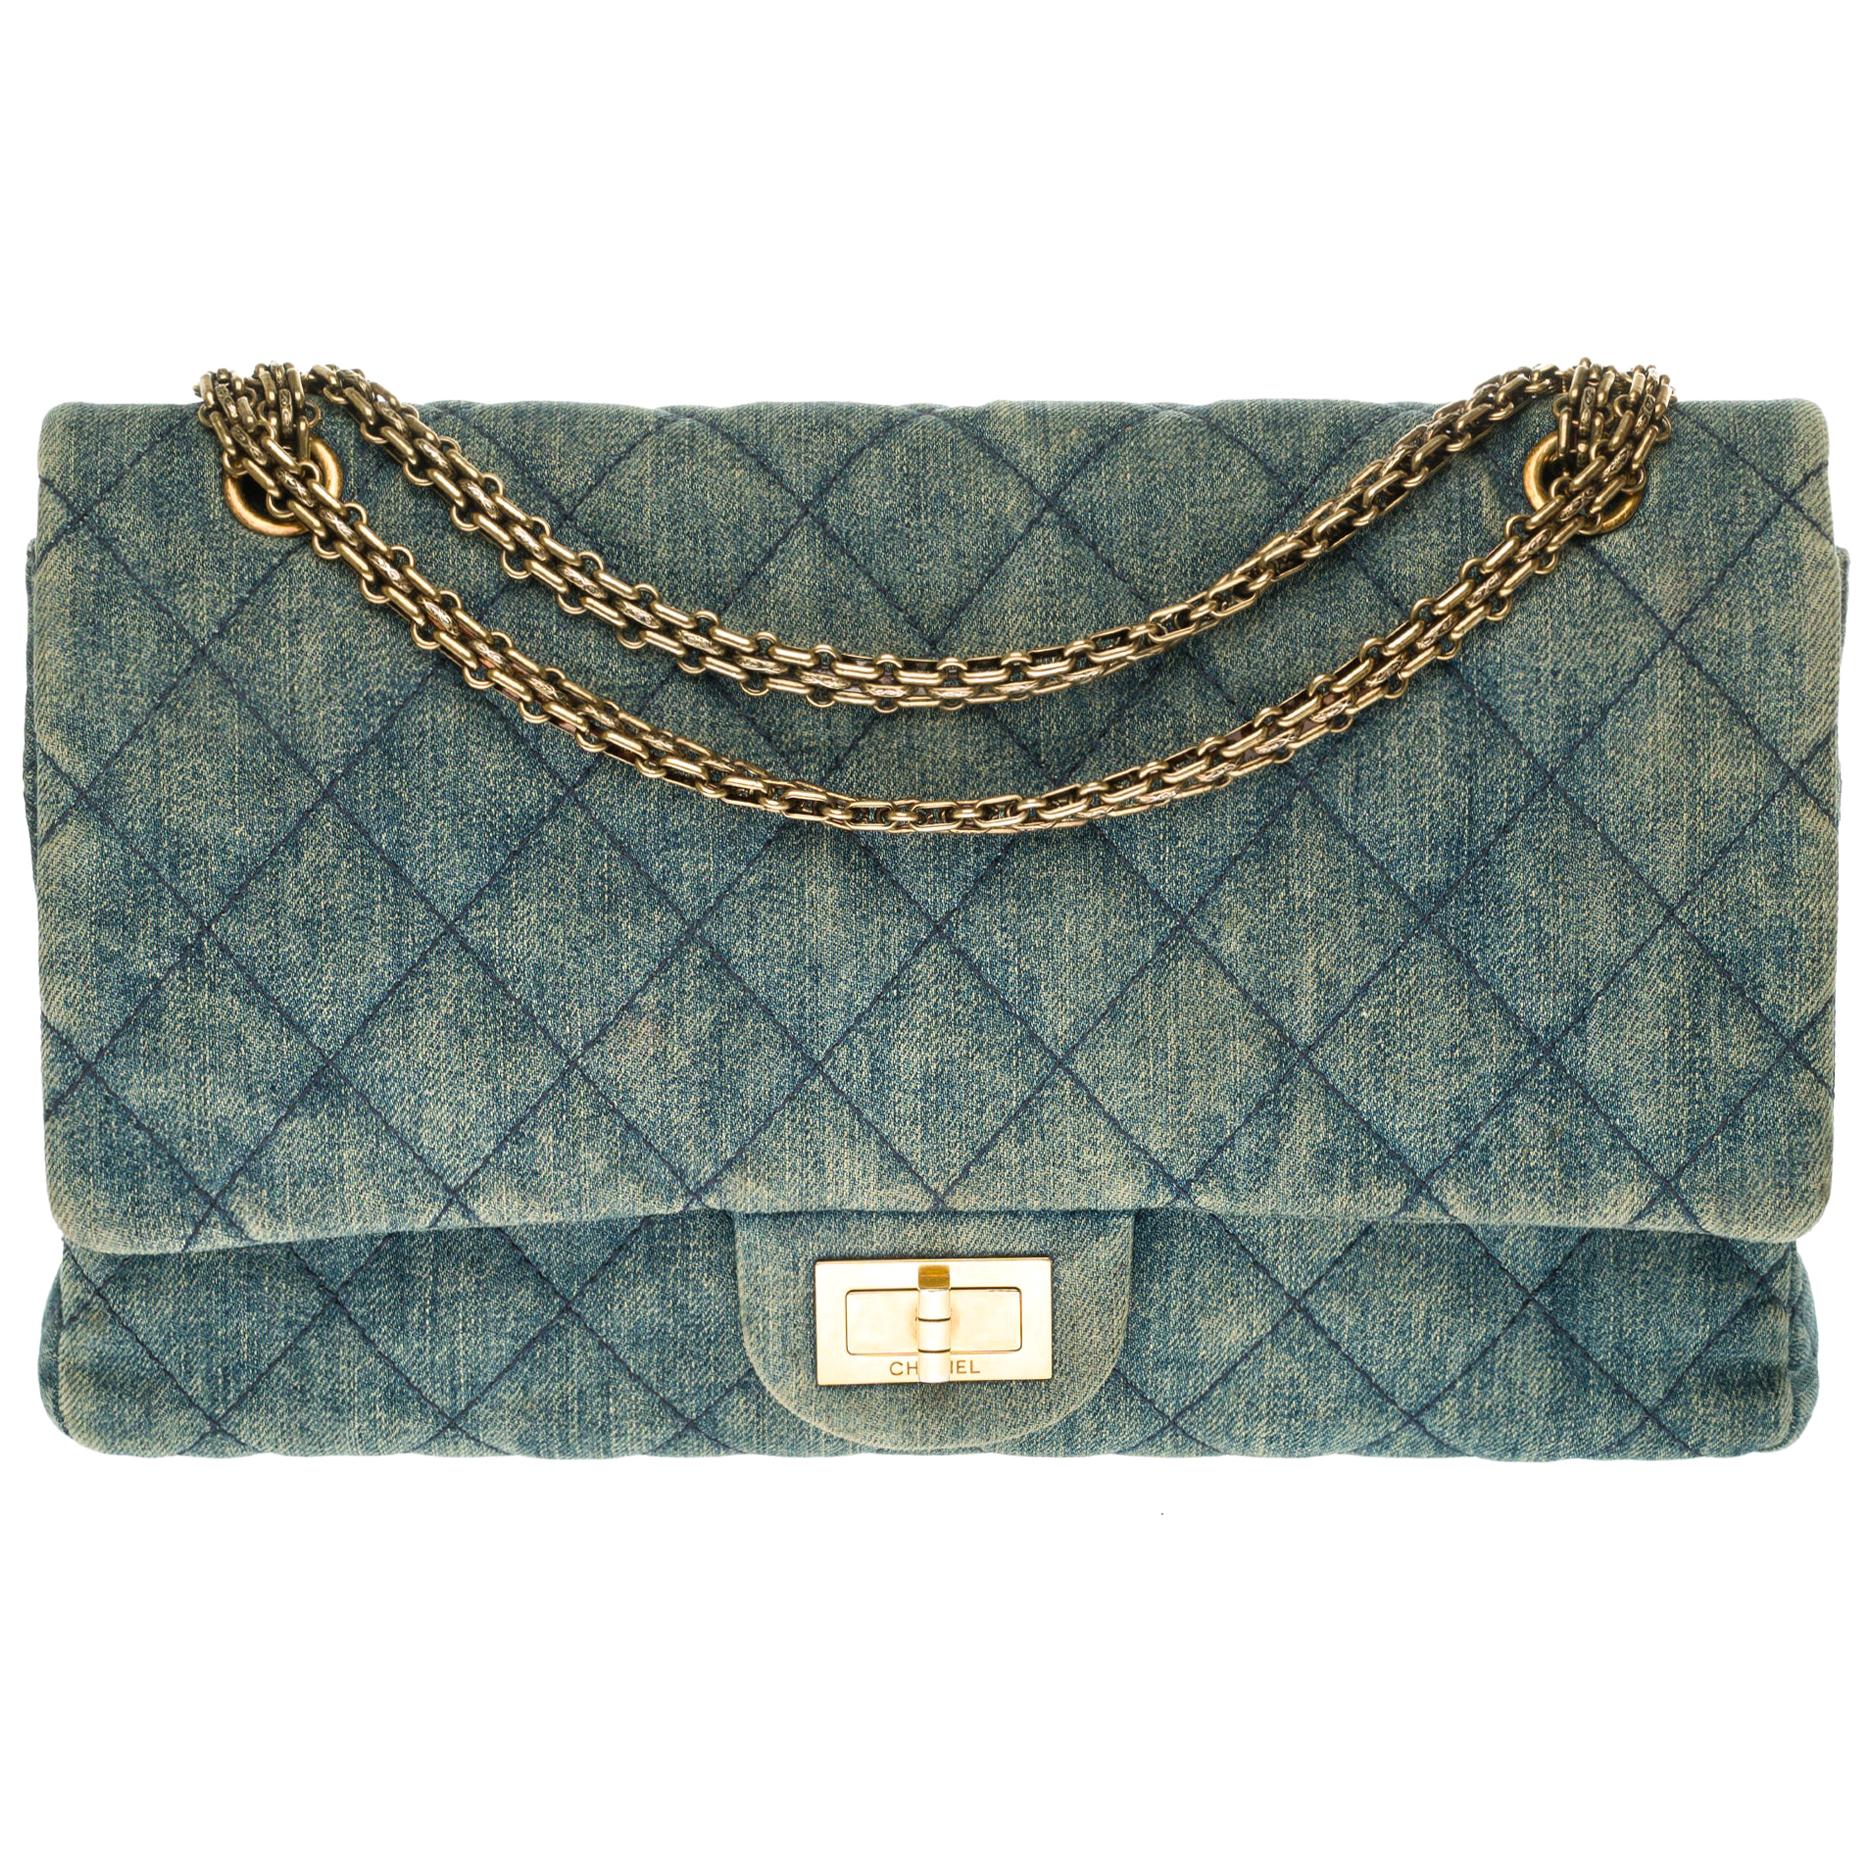 Chanel 2.55 Reissue 227 handbag in blue quilted denim with bronze hardware